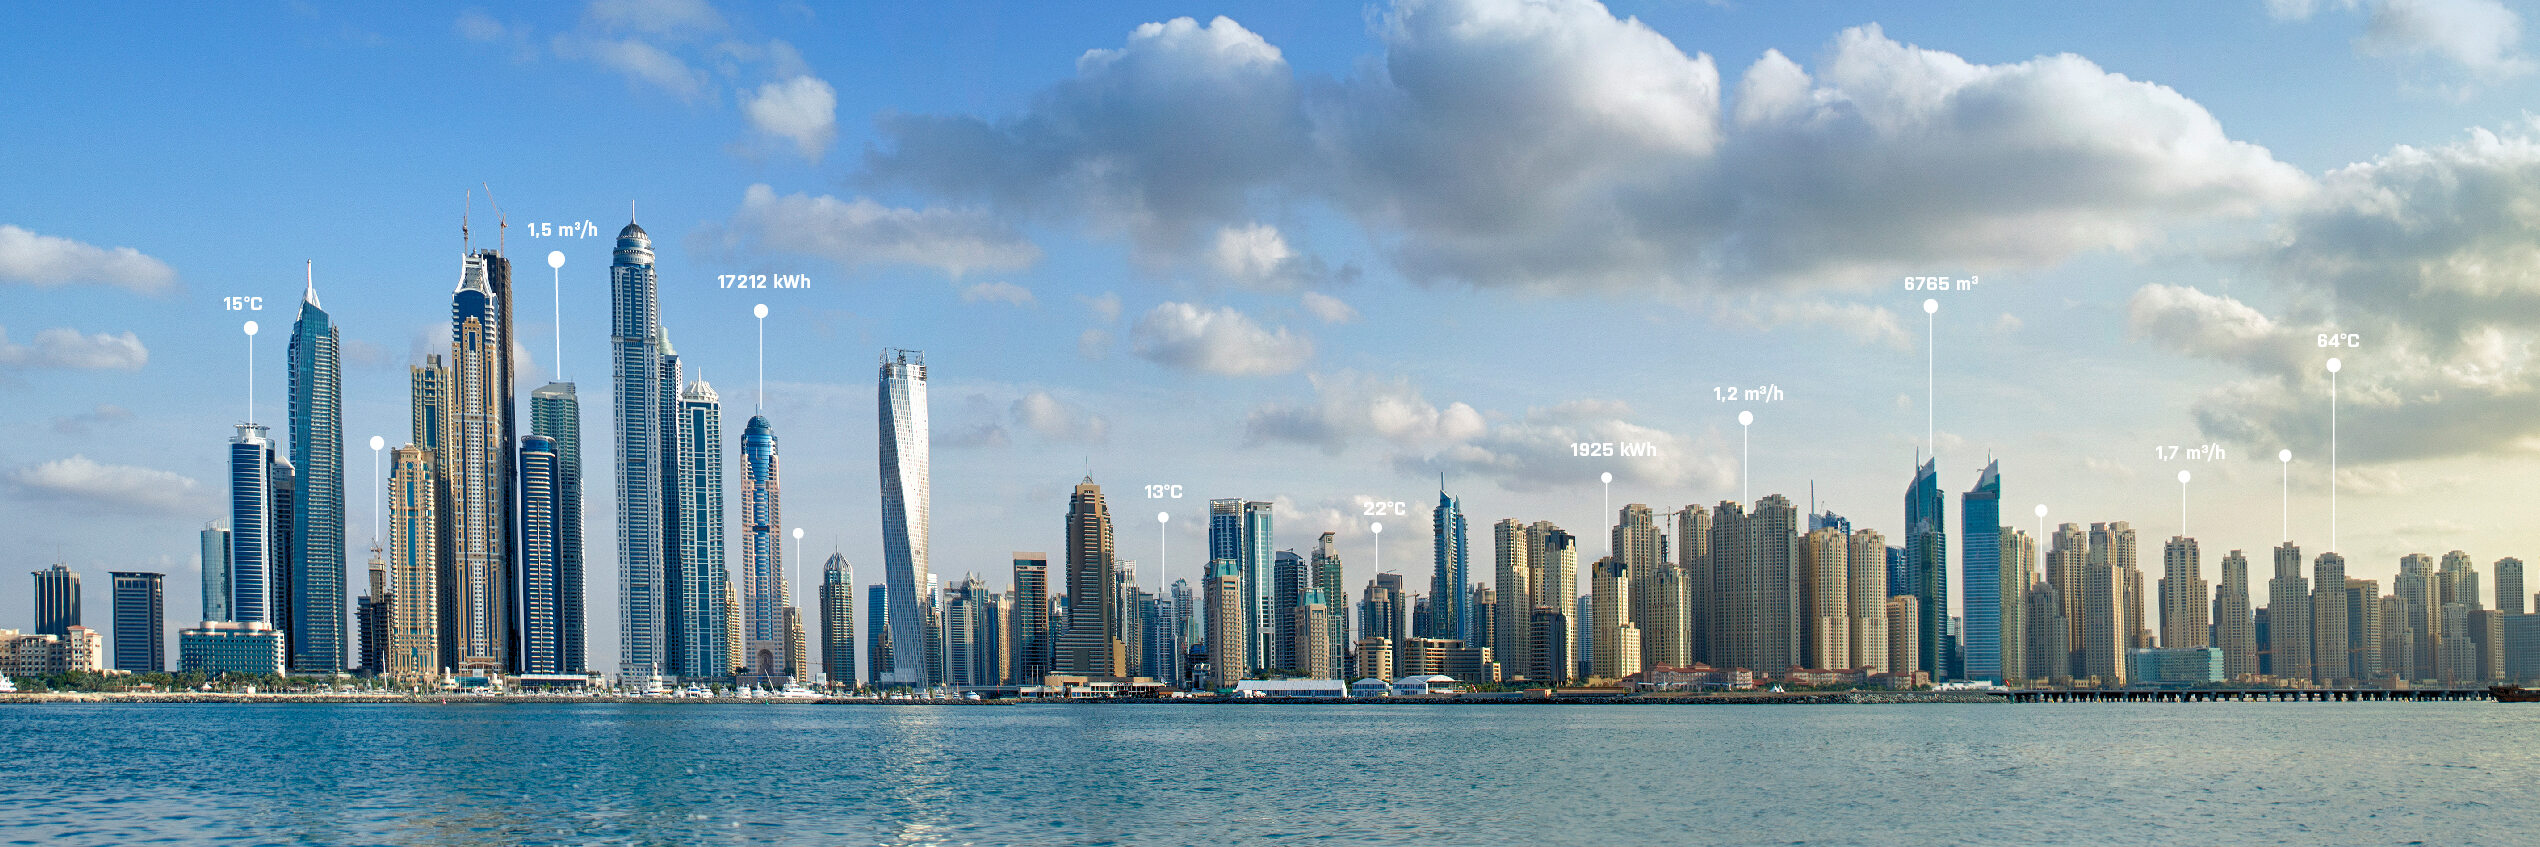 Dubaj: nasze rozwijające się centrum regionalne